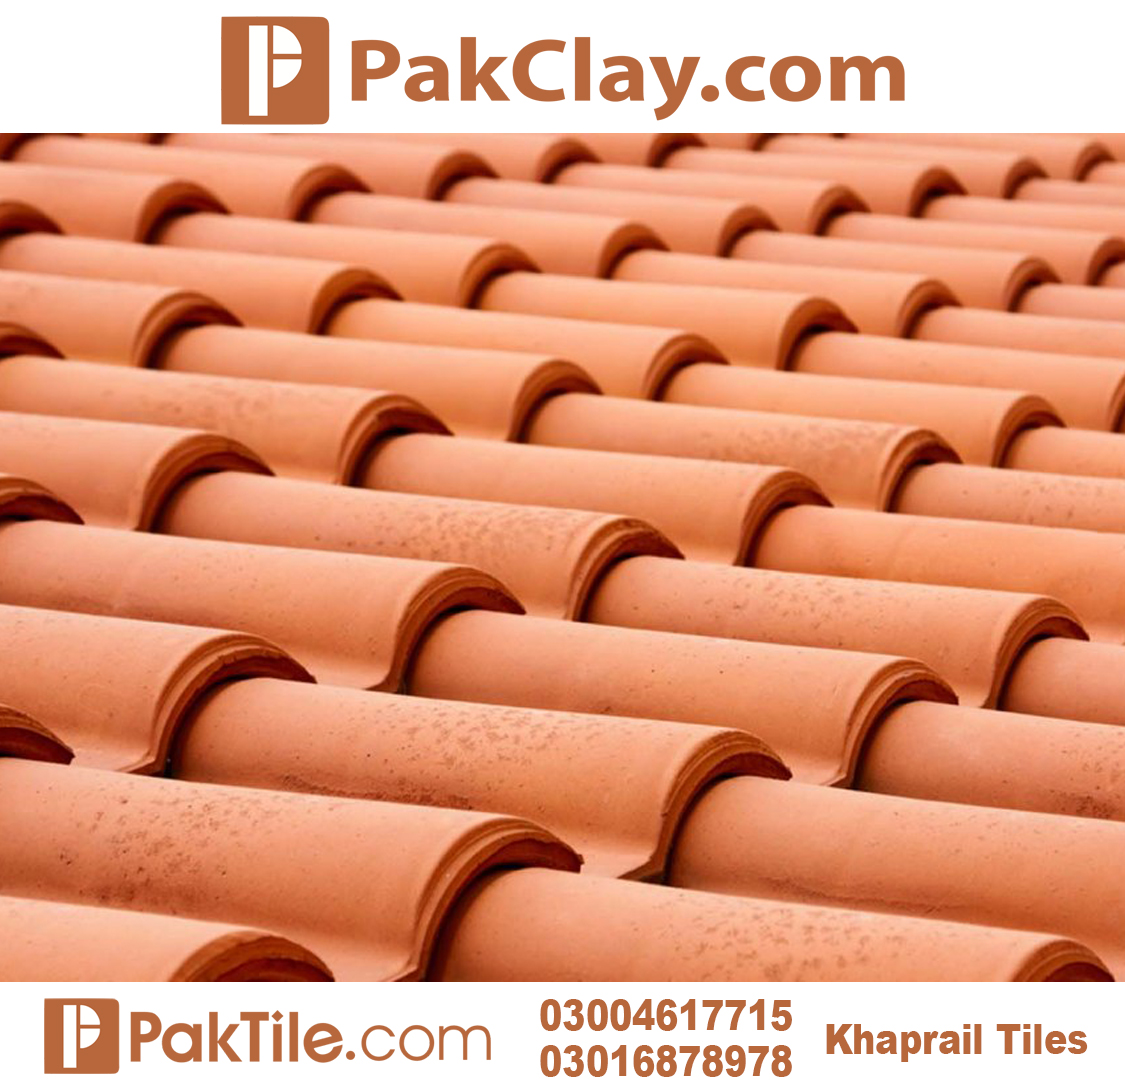 1 Pak Clay Khaprail Tiles in Shikarpur